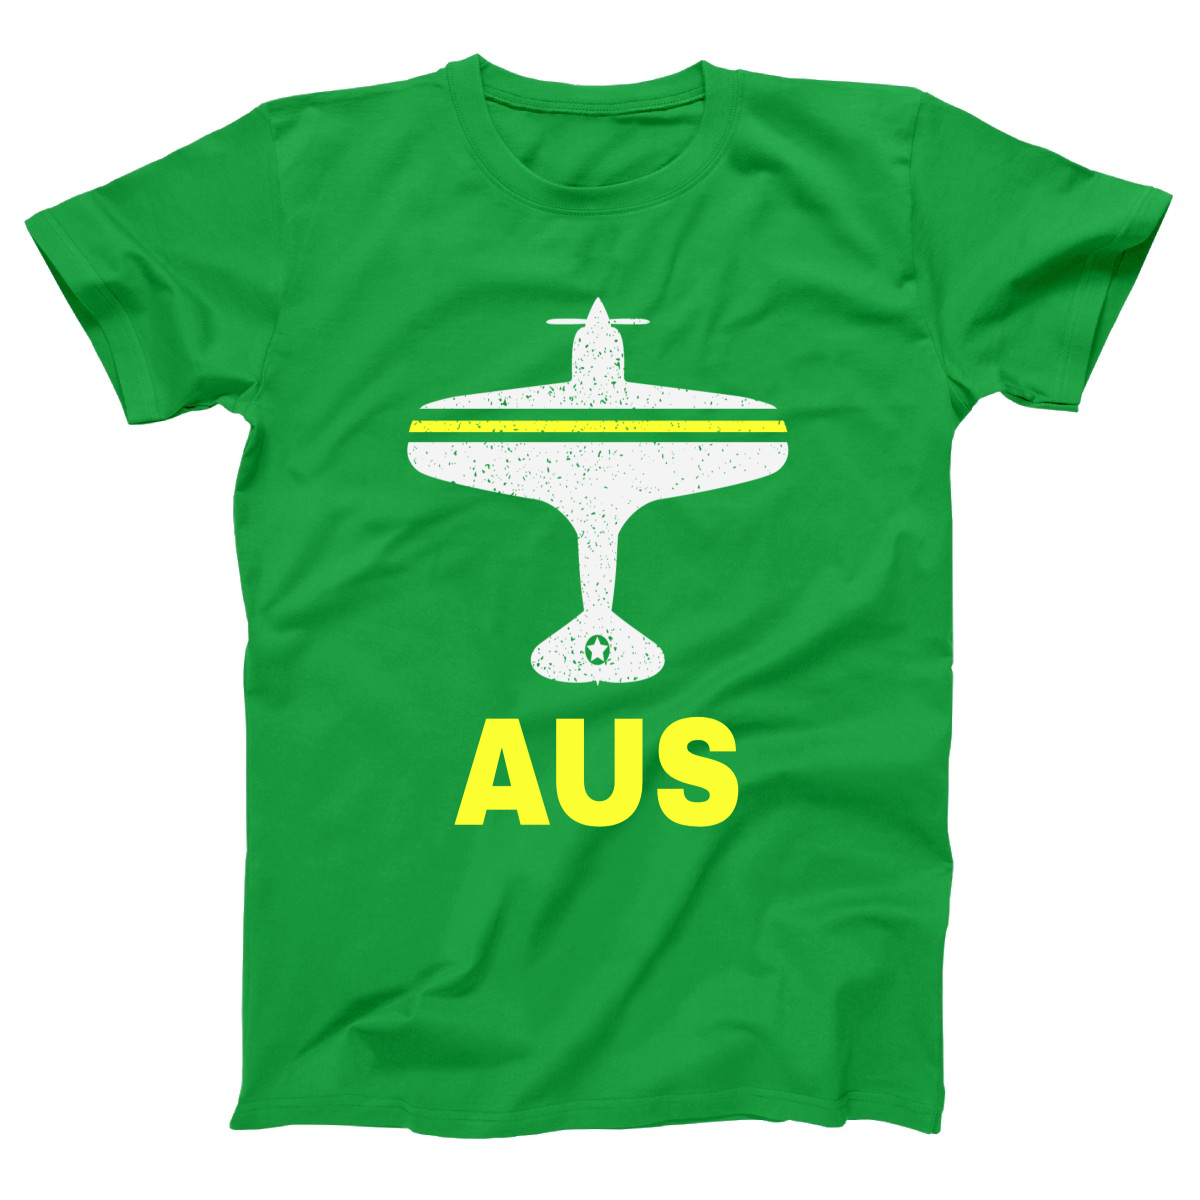 Fly Austin AUS Airport Women's T-shirt | Green